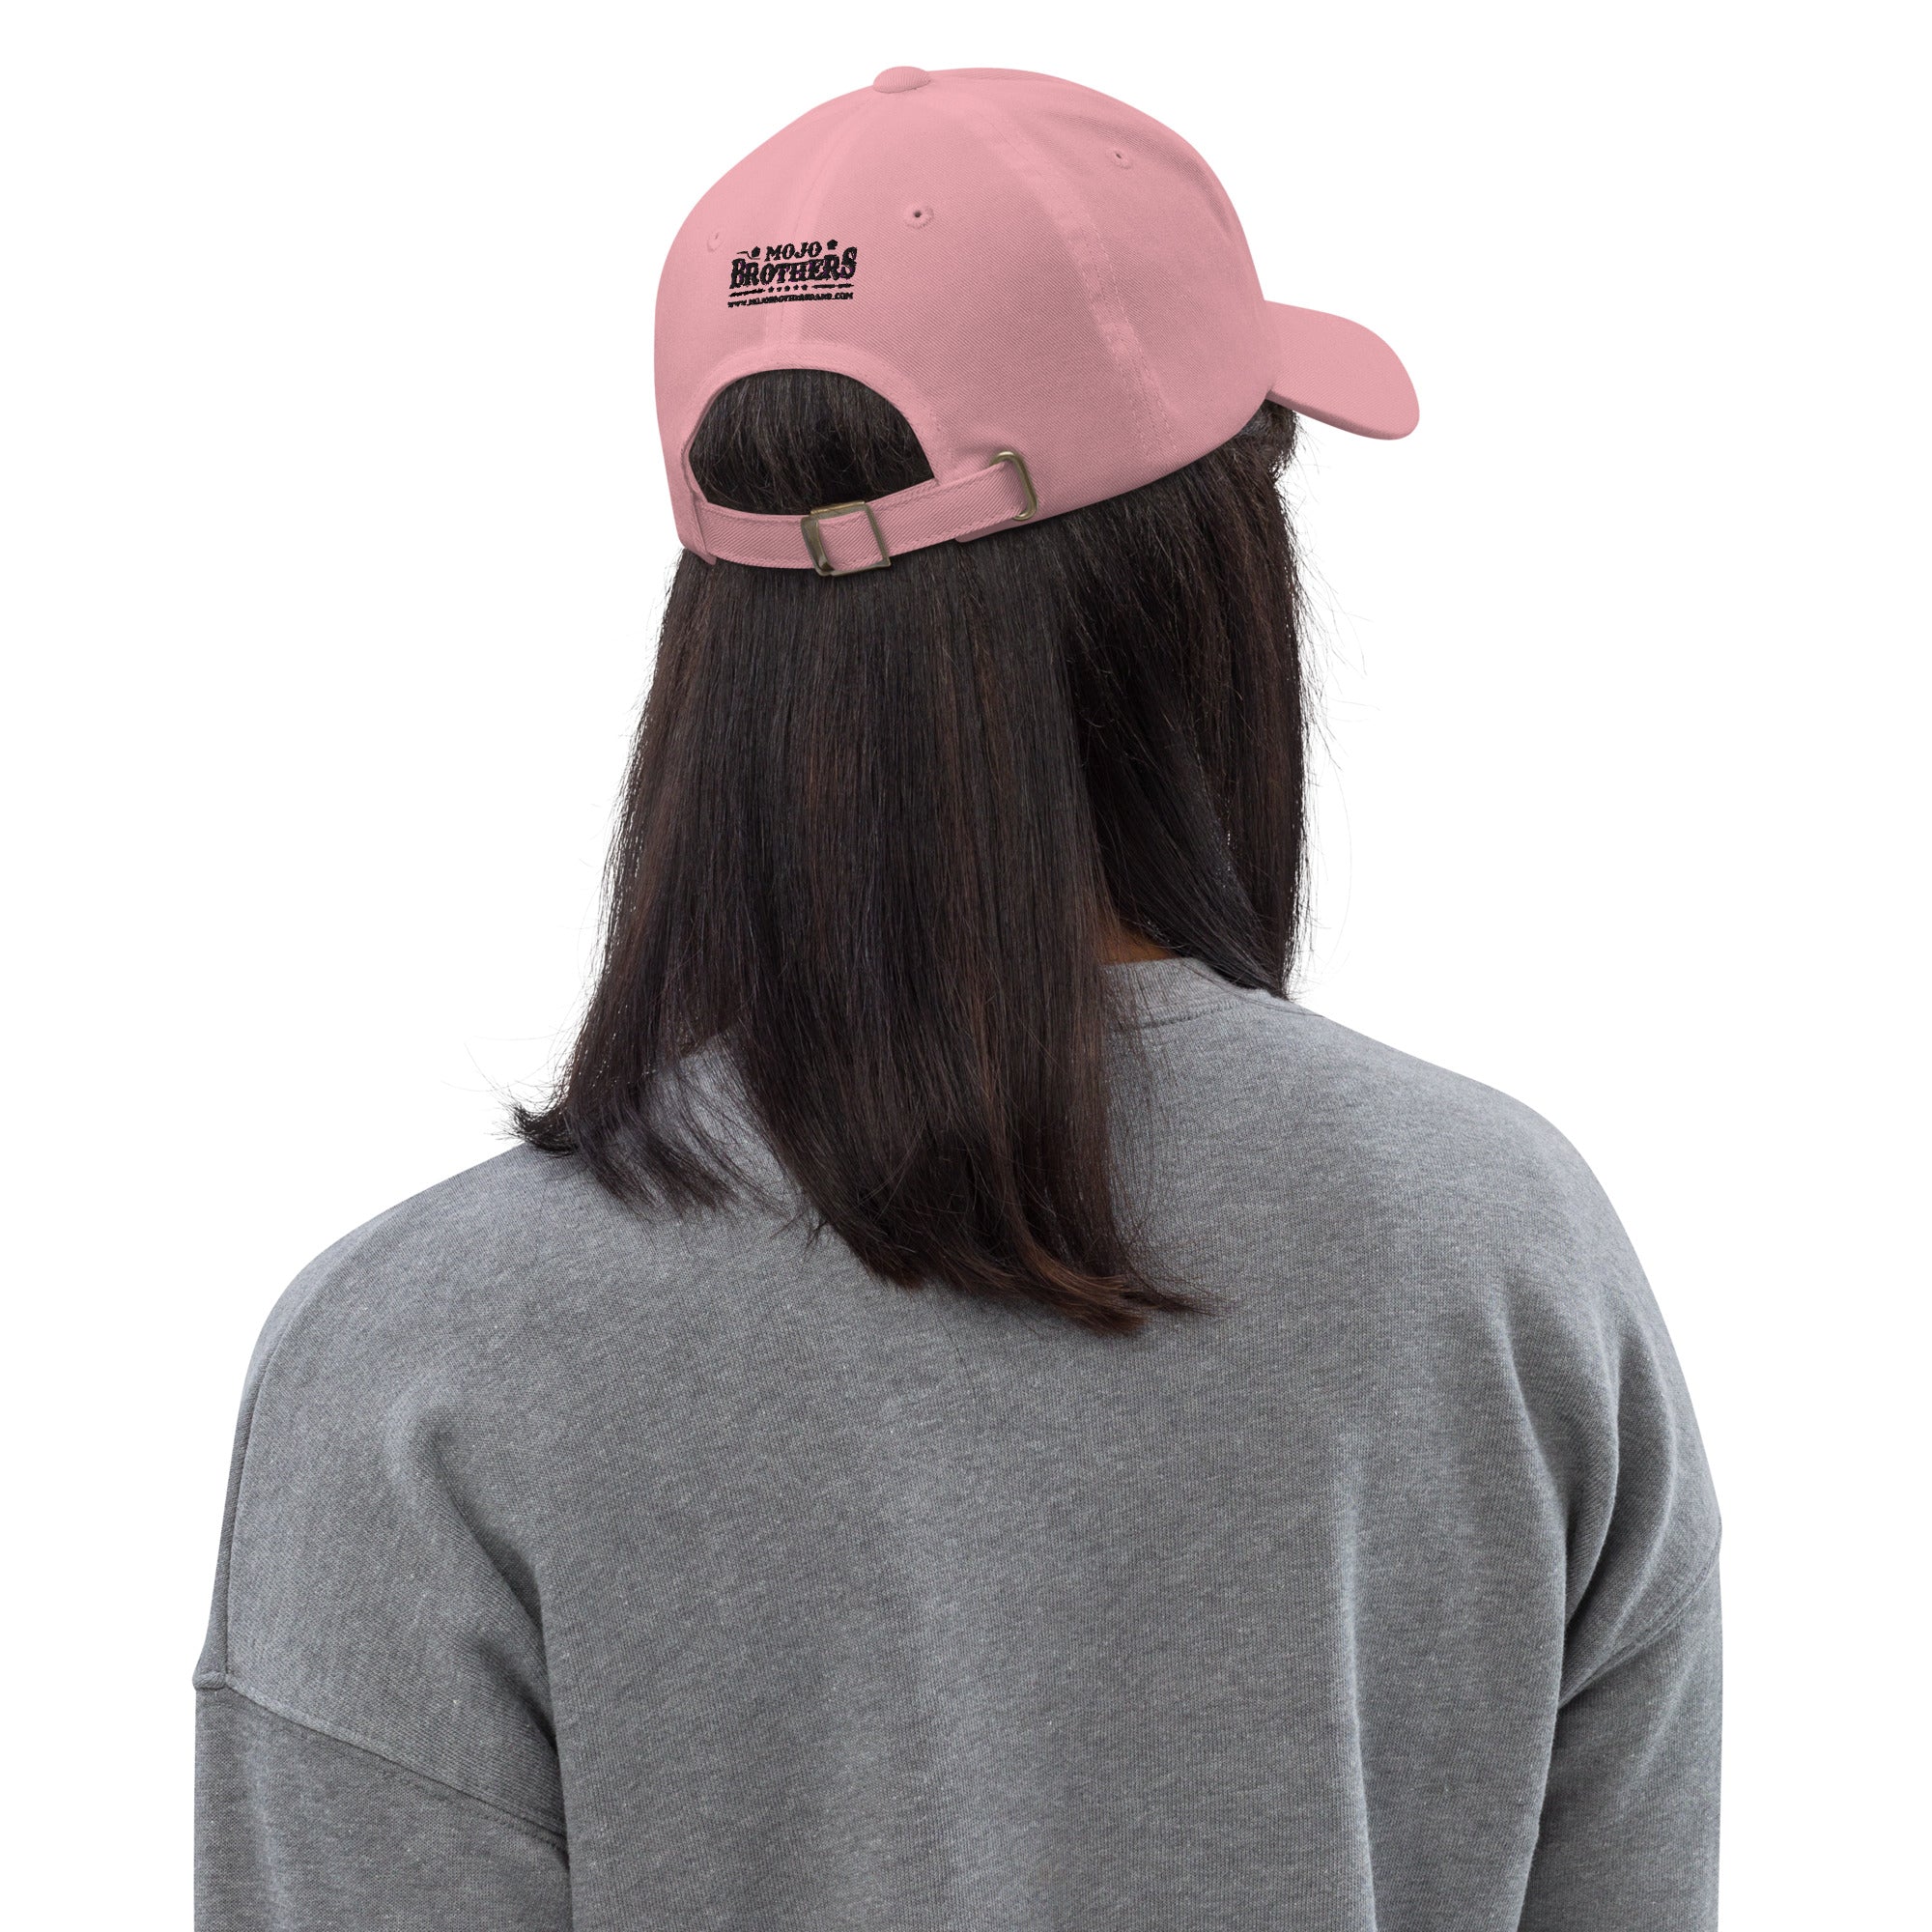 Got Mojo? Pink Hat